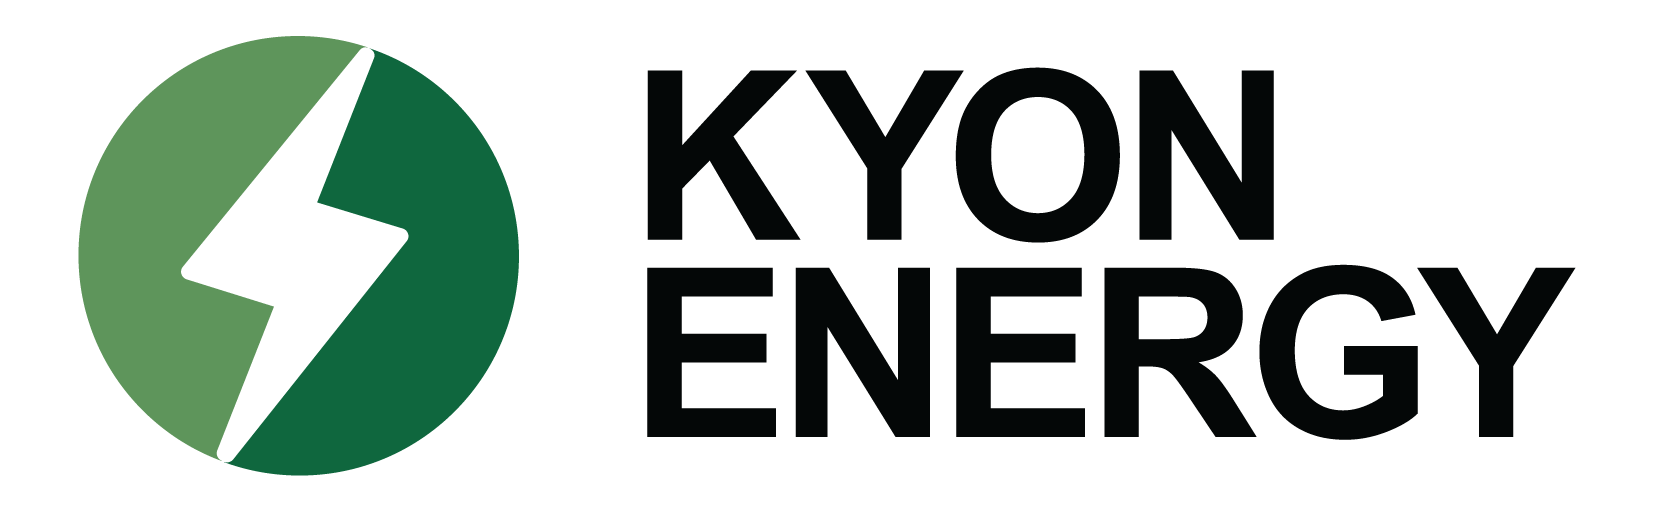 kyon energy